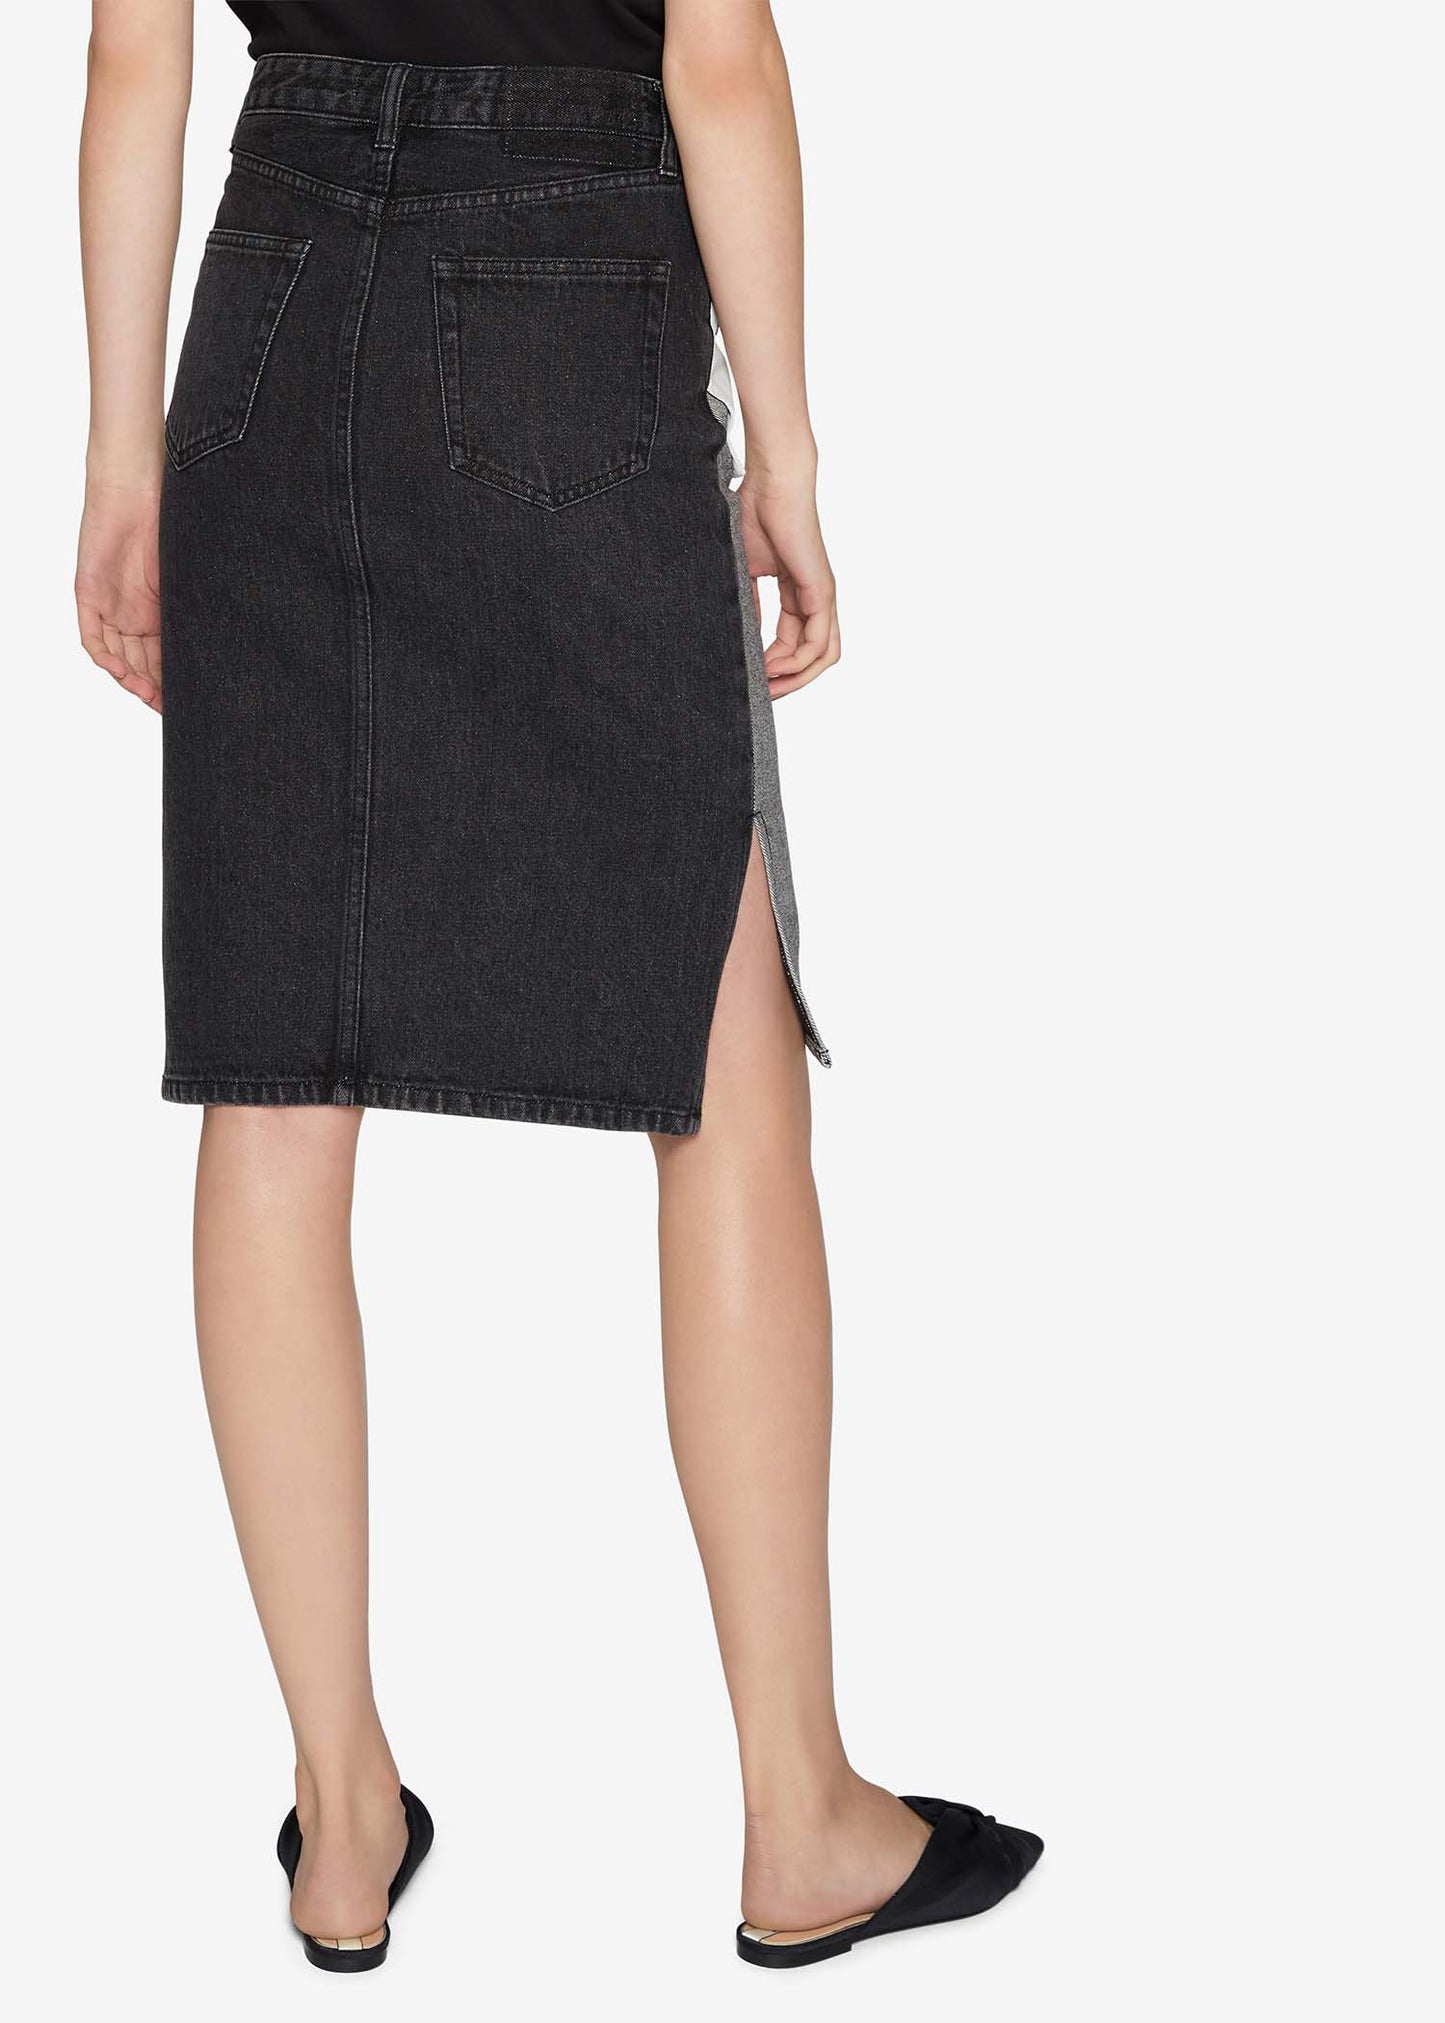 Inside Out Denim Skirt